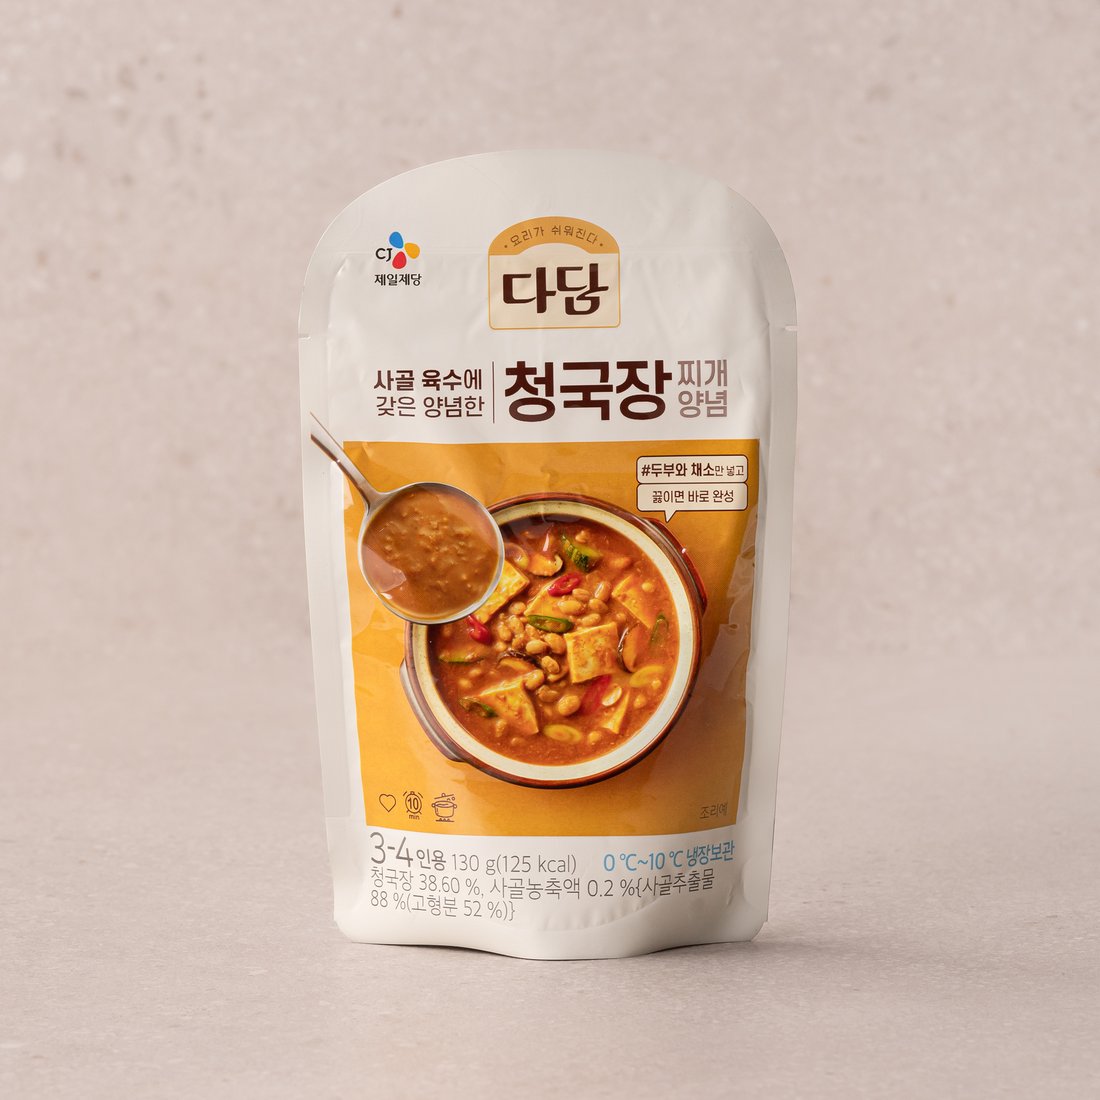 白雪淸麴醬汤韩国进口大酱汤臭酱汤清曲酱速食韩餐调味品韩式料理